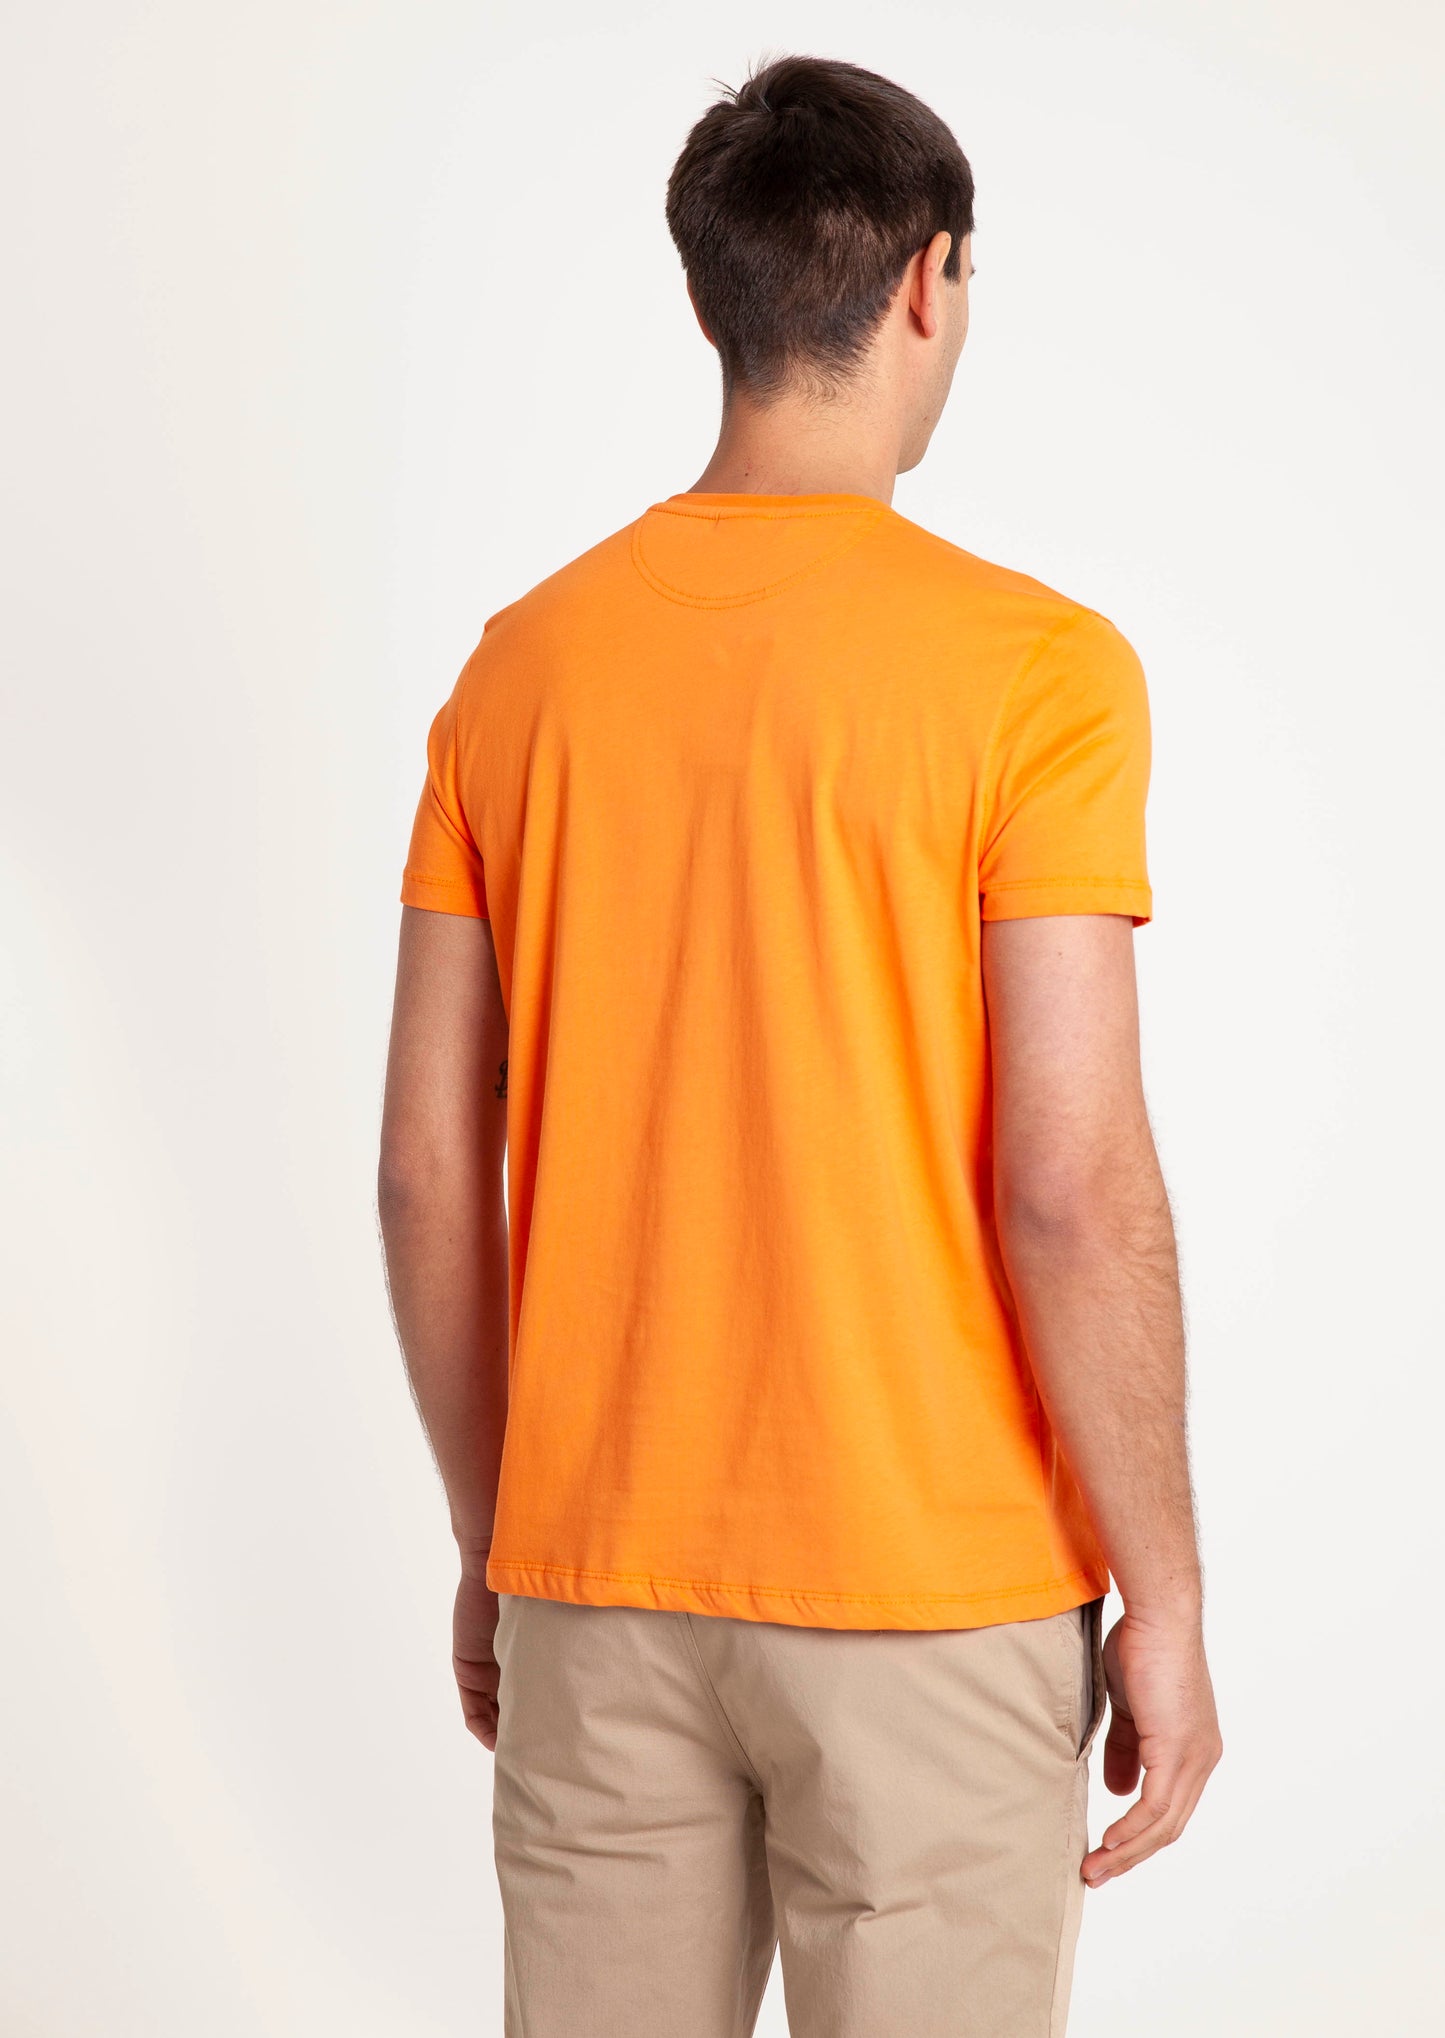 Tartan Crest T-Shirt - Tangerine